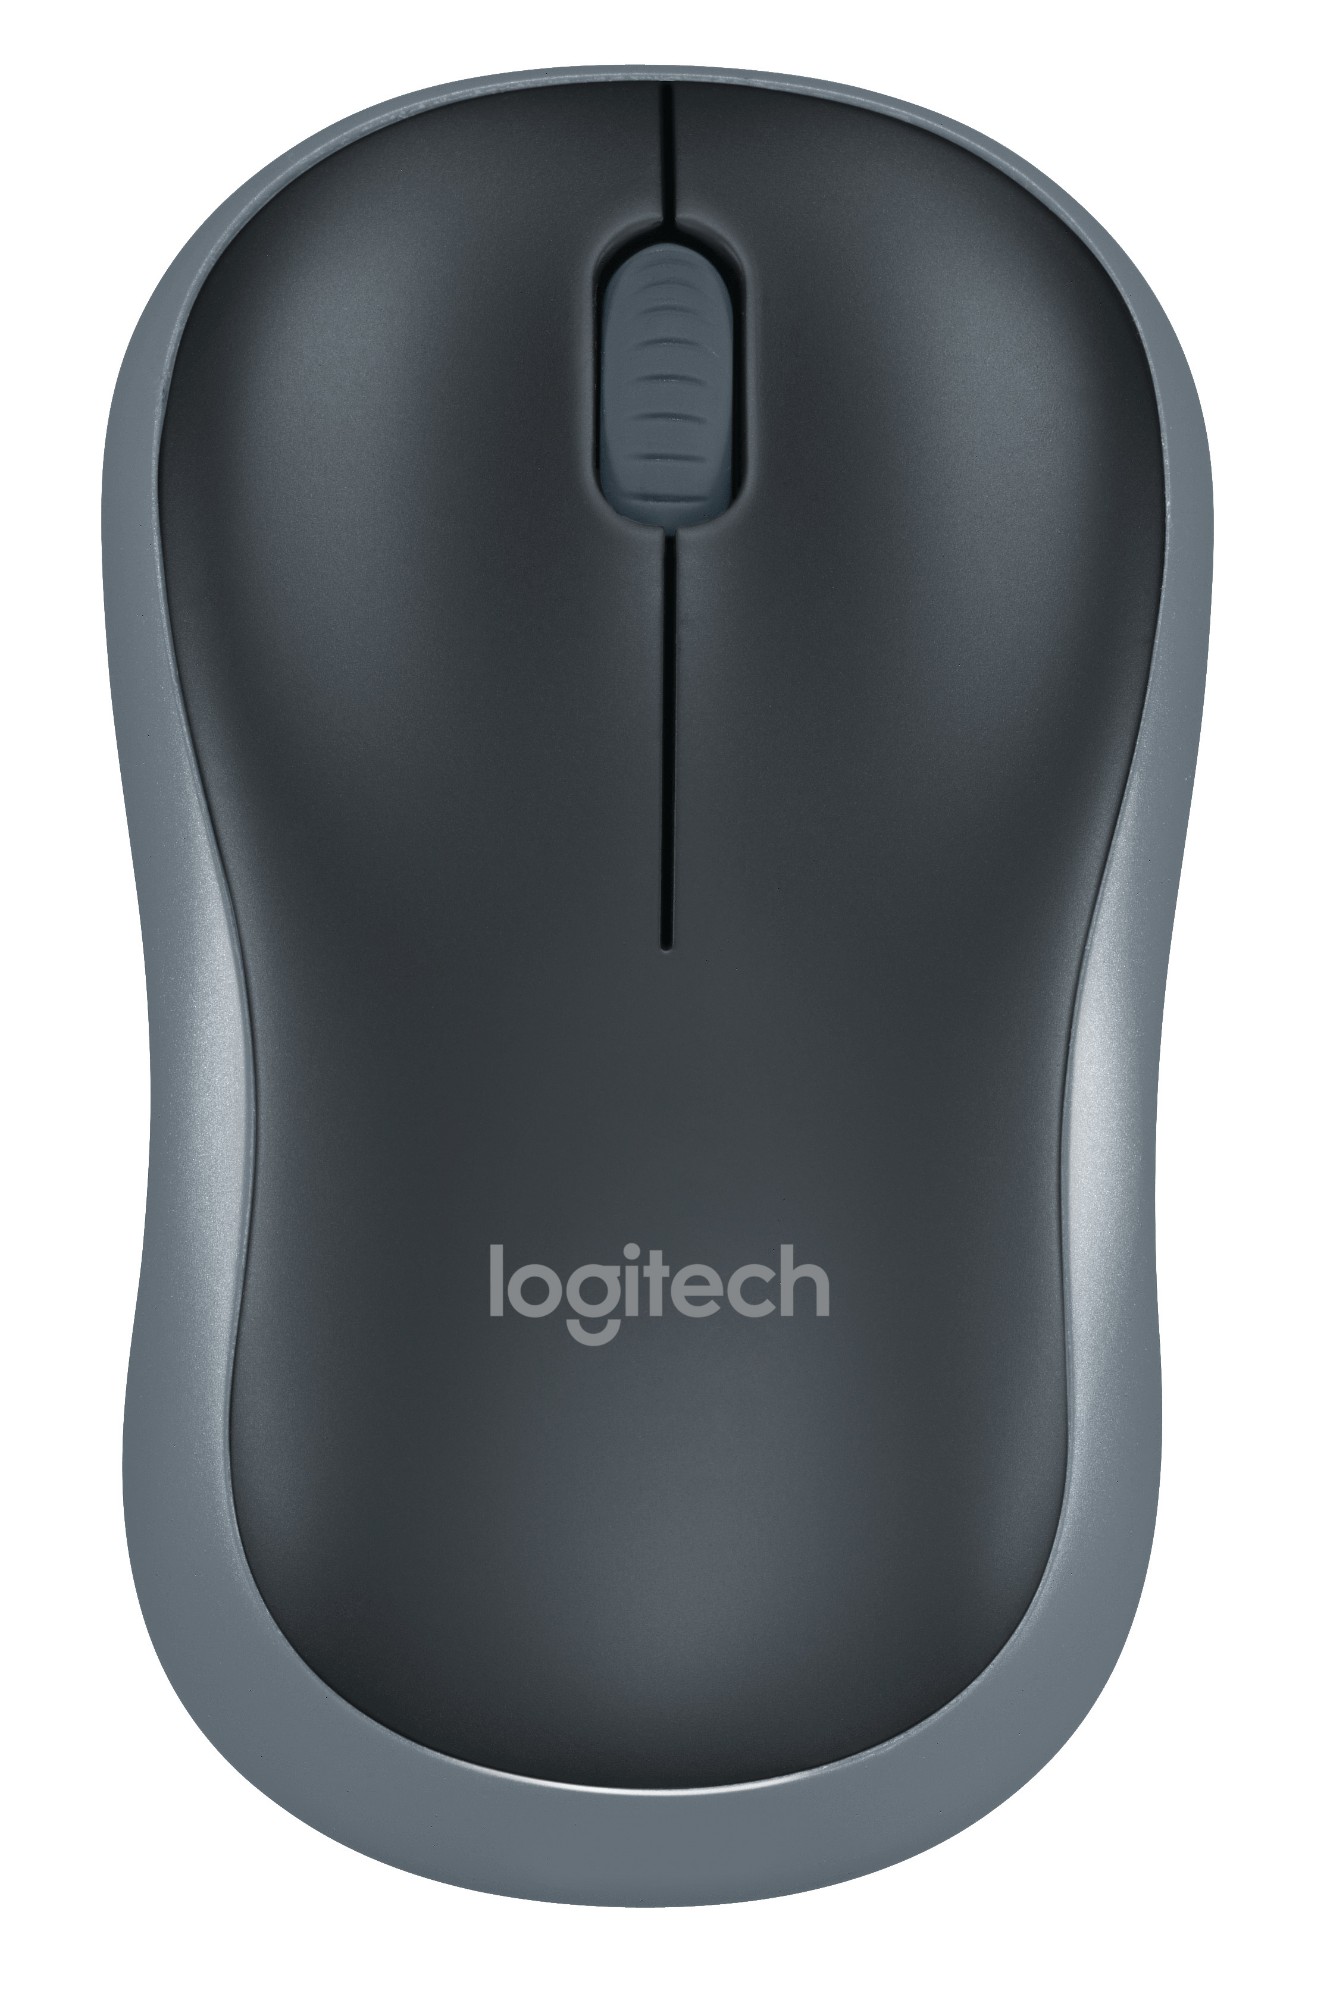 Logitech M185 mouse Ambidextrous RF Wireless Optical 1000 DPI